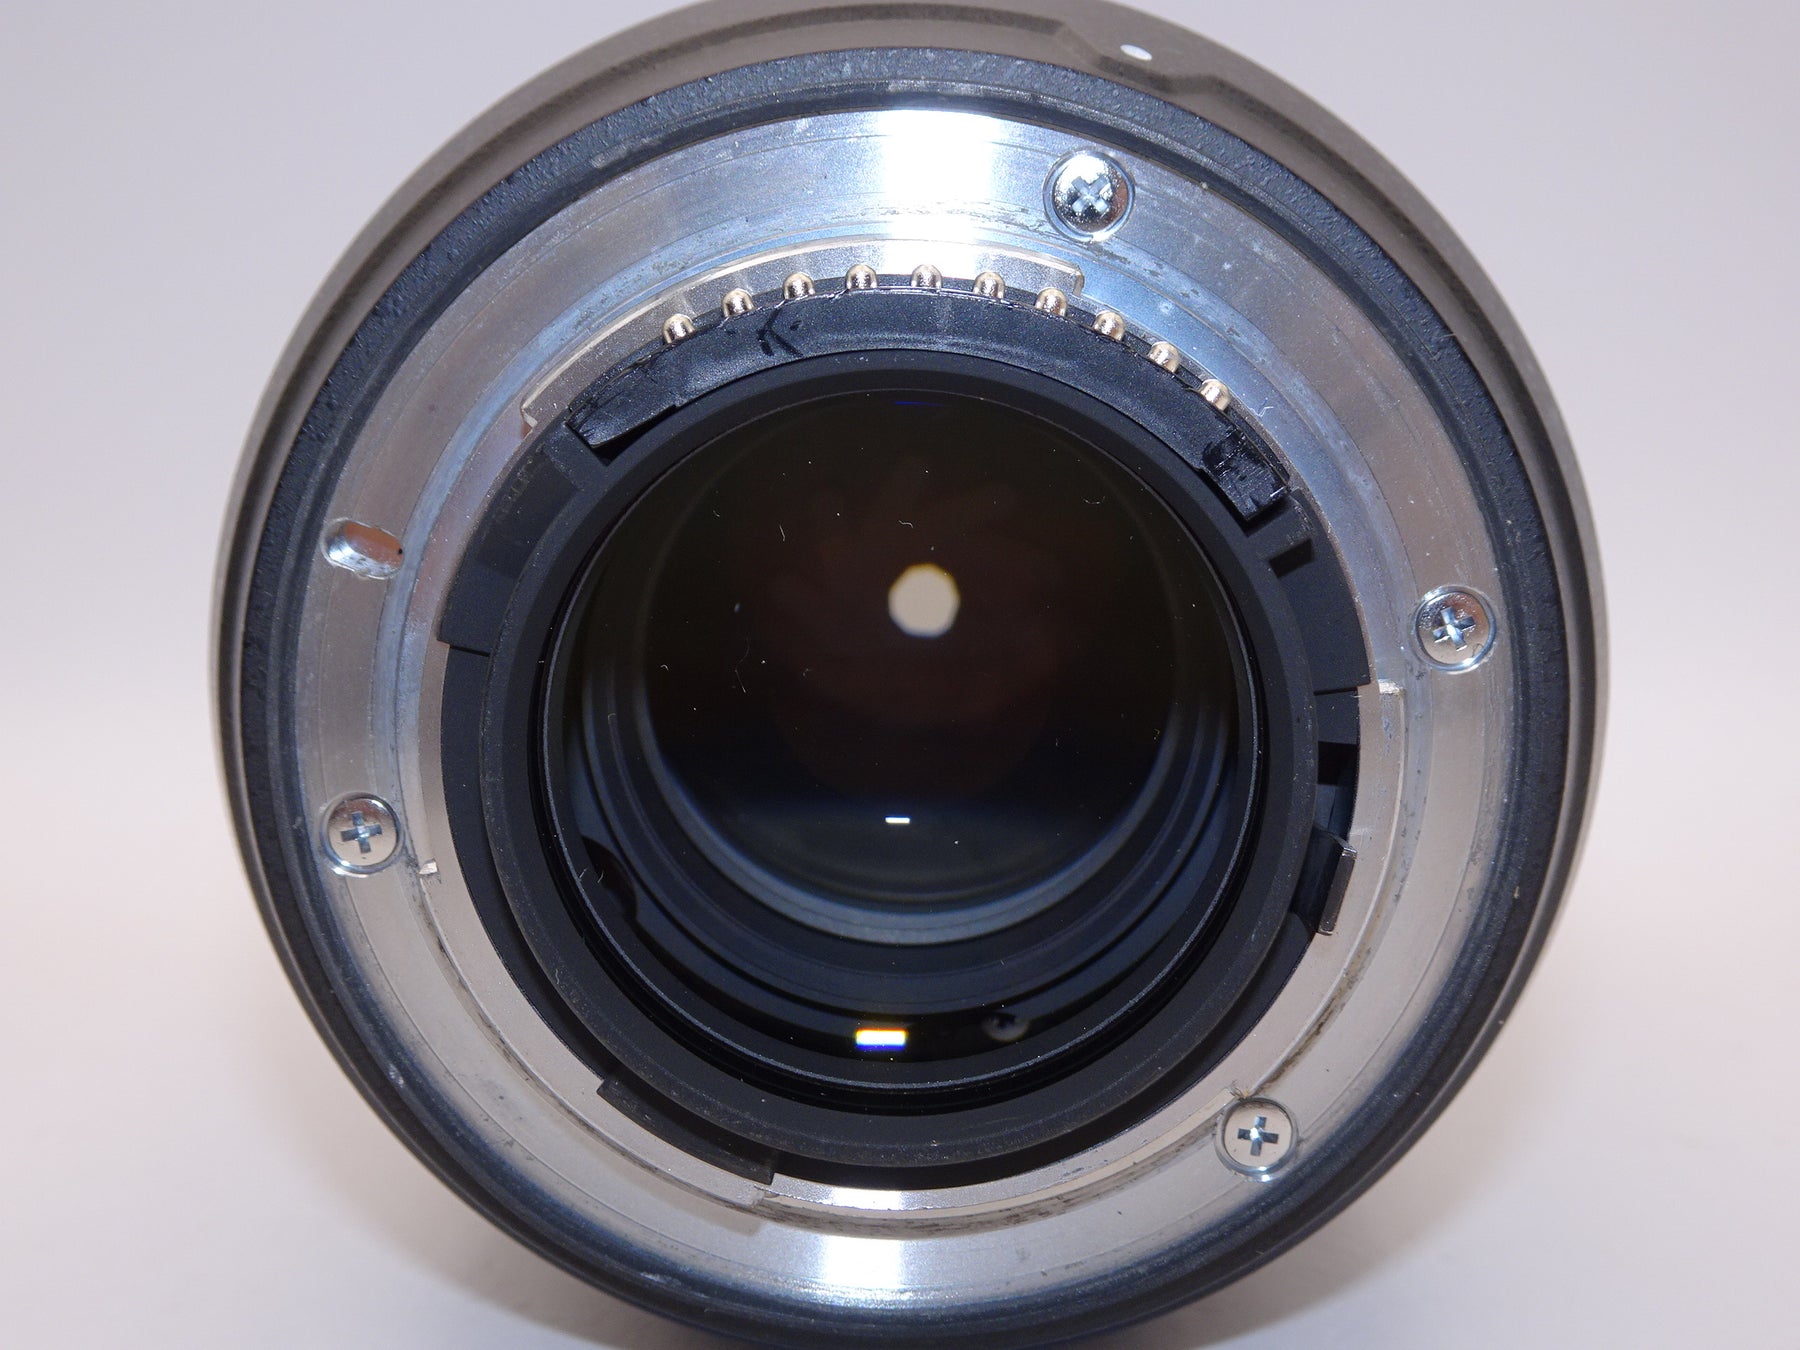 【外観特上級】Nikon 標準ズームレンズ AF-S NIKKOR 24-70mm f/2.8G ED フルサイズ対応